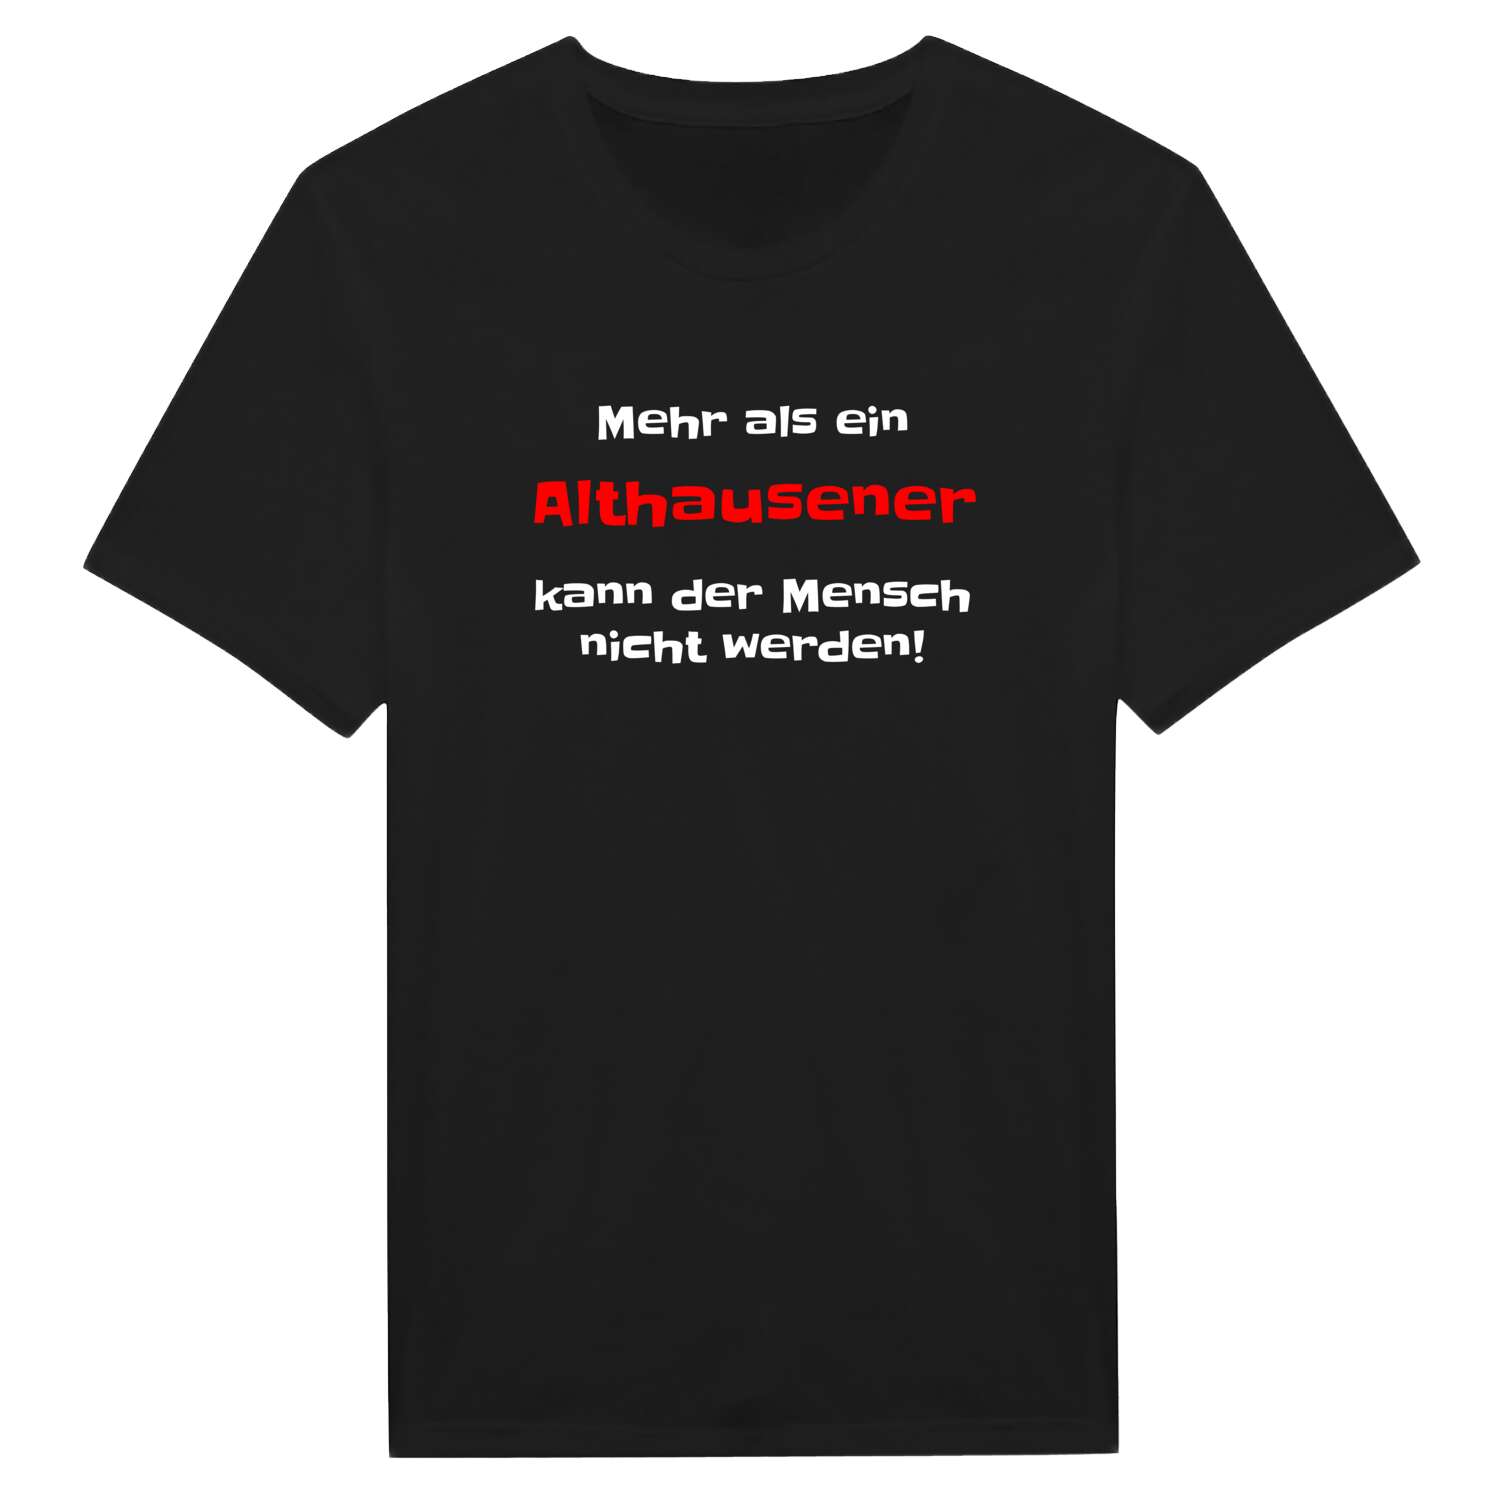 Althausen T-Shirt »Mehr als ein«